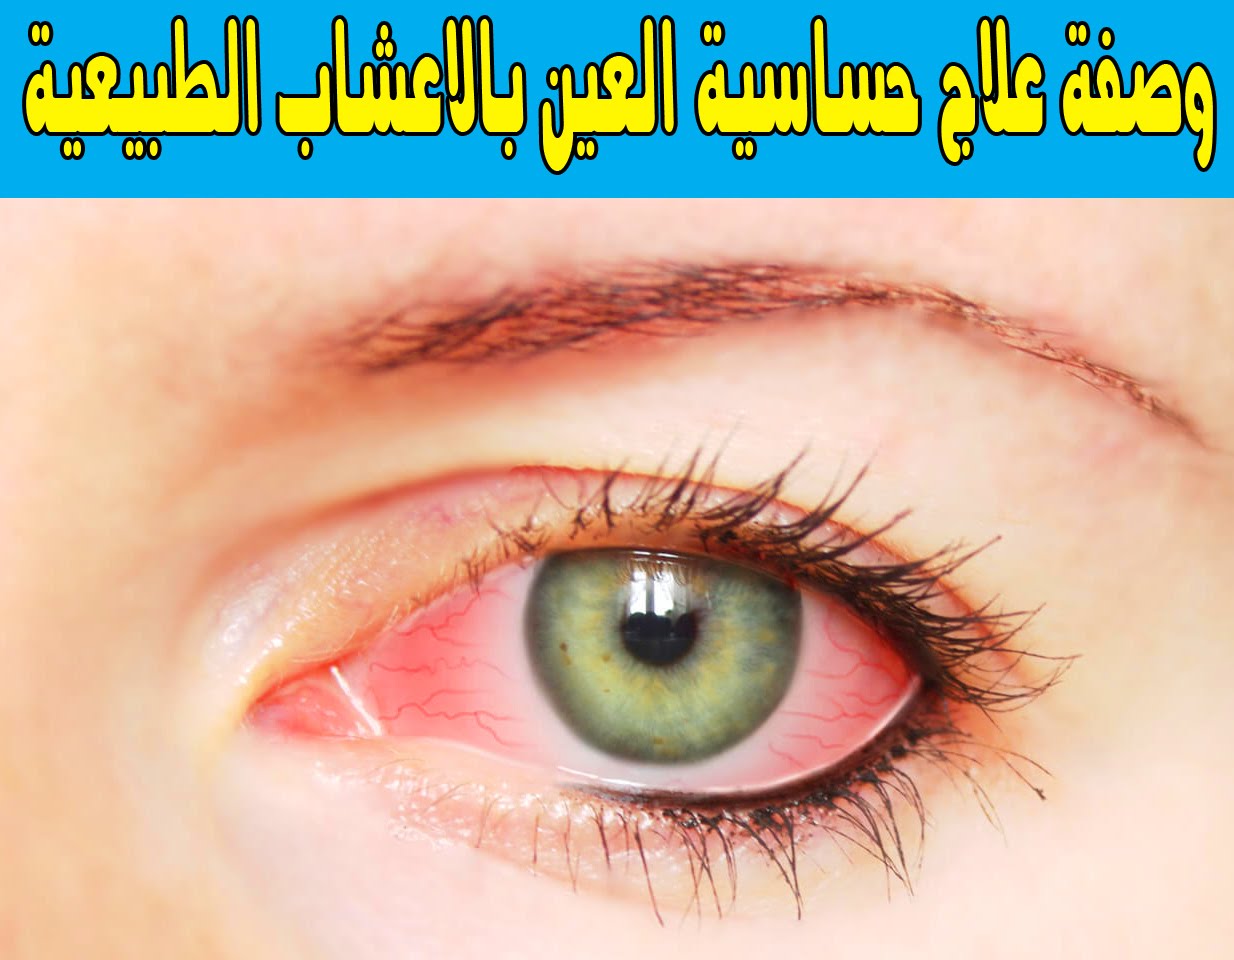 علاج حساسية العين , افضل علاج لحساسيه العين - عبارات